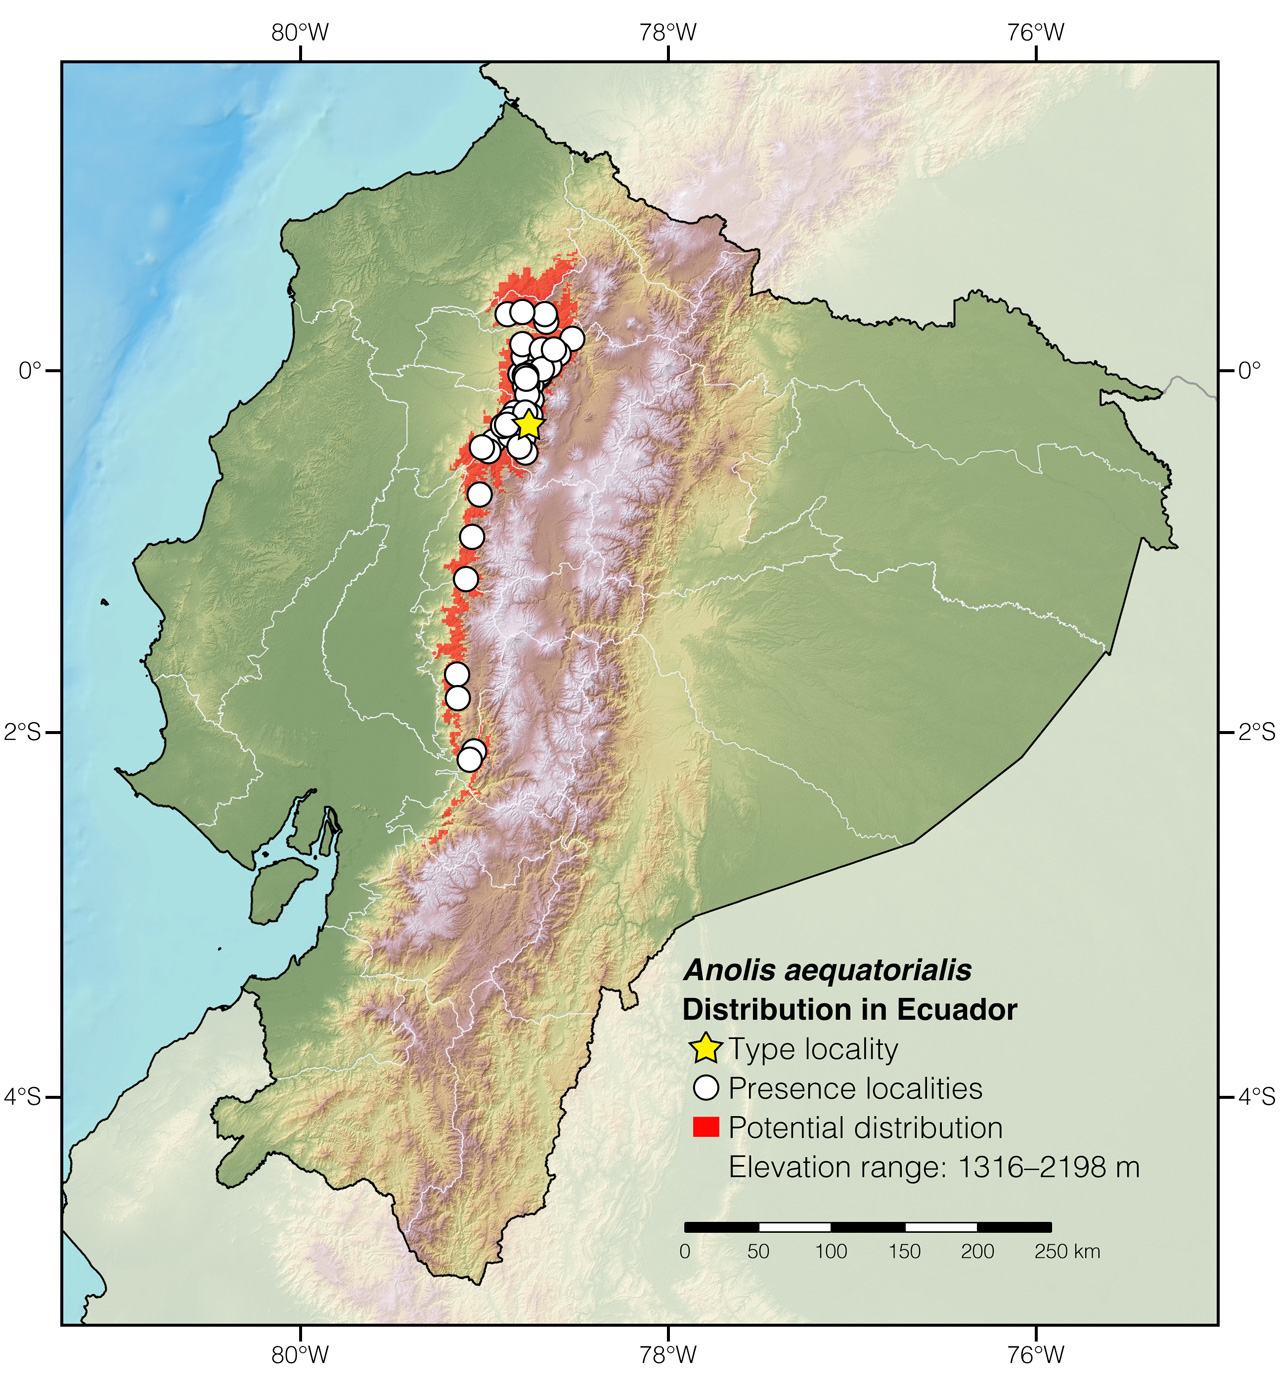 Distribution of Anolis aequatorialis in Ecuador